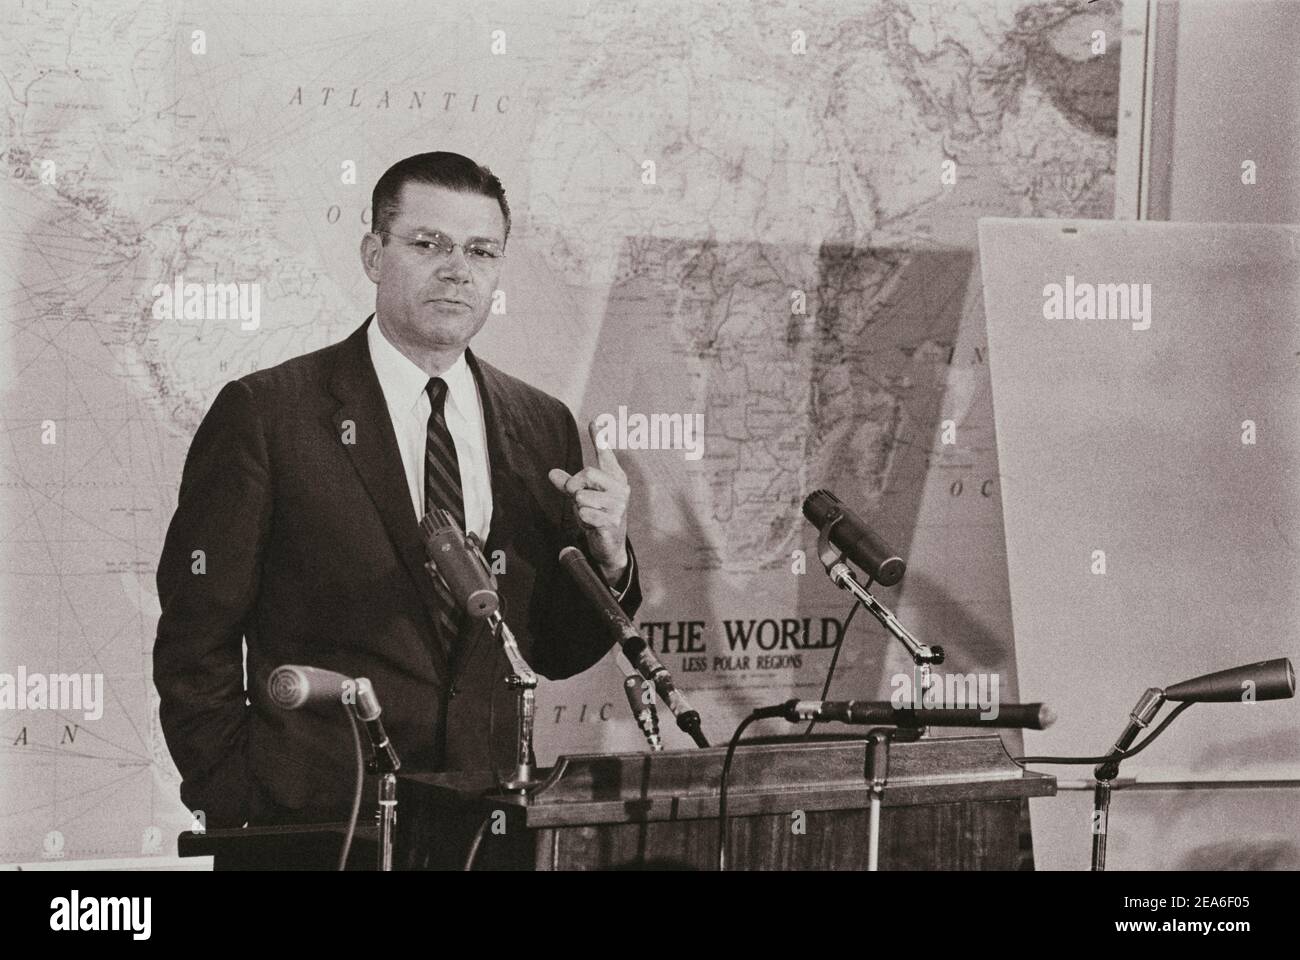 Il Segretario della Difesa statunitense Robert McNamara alla conferenza stampa risponde alle domande sulla crisi missilistica cubana. STATI UNITI. 23 ottobre 1962 Foto Stock